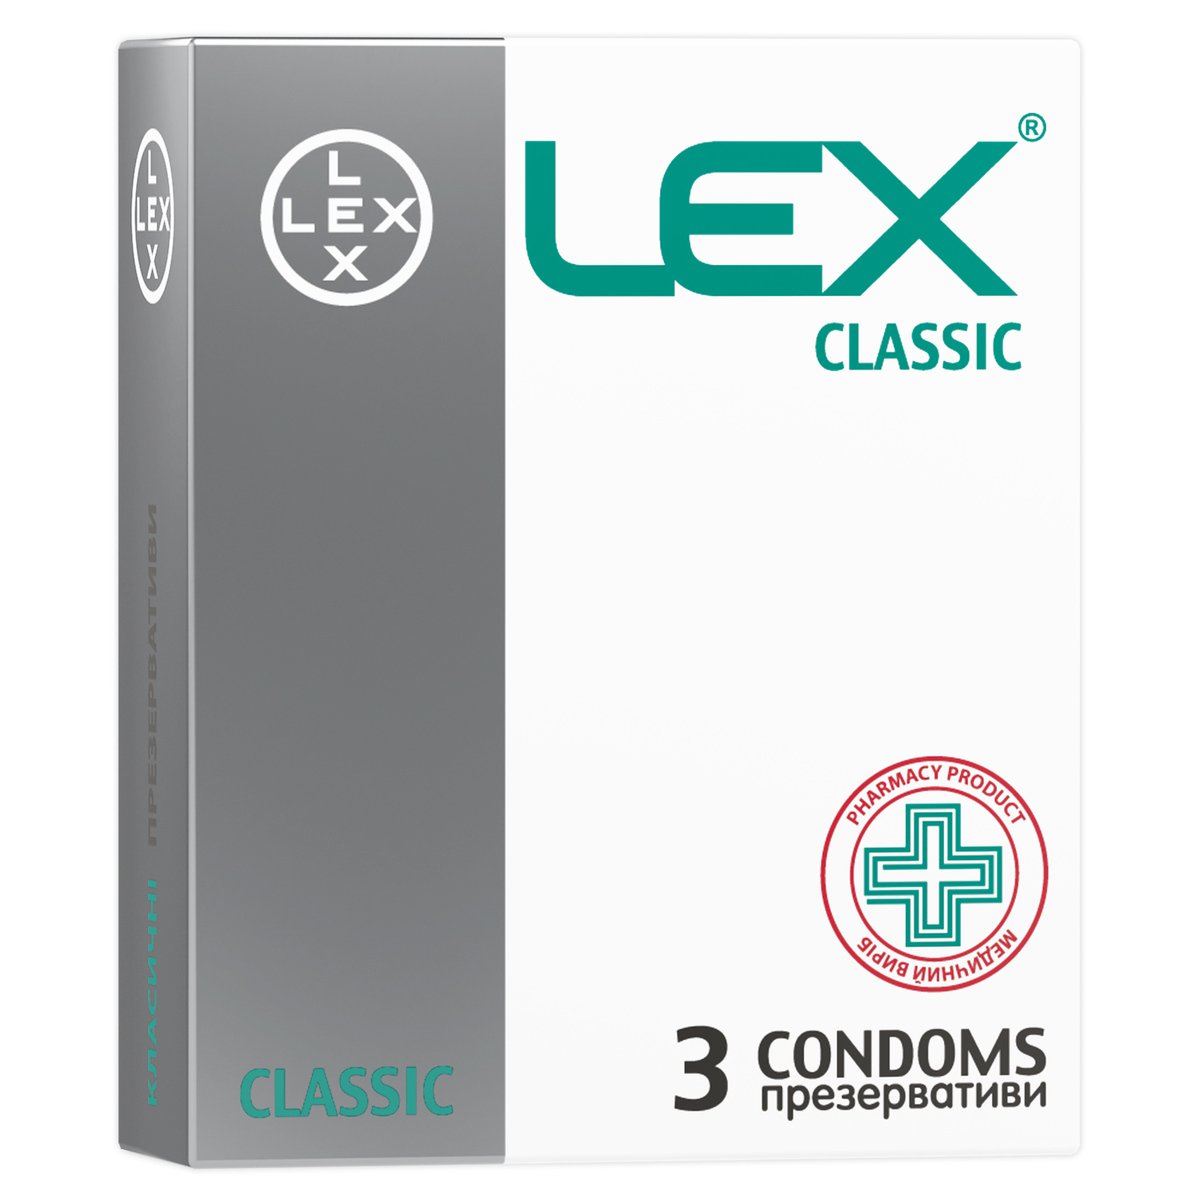 Презервативы Lex Classic классические, 3 шт. (LEX/Classic/3) - фото 1